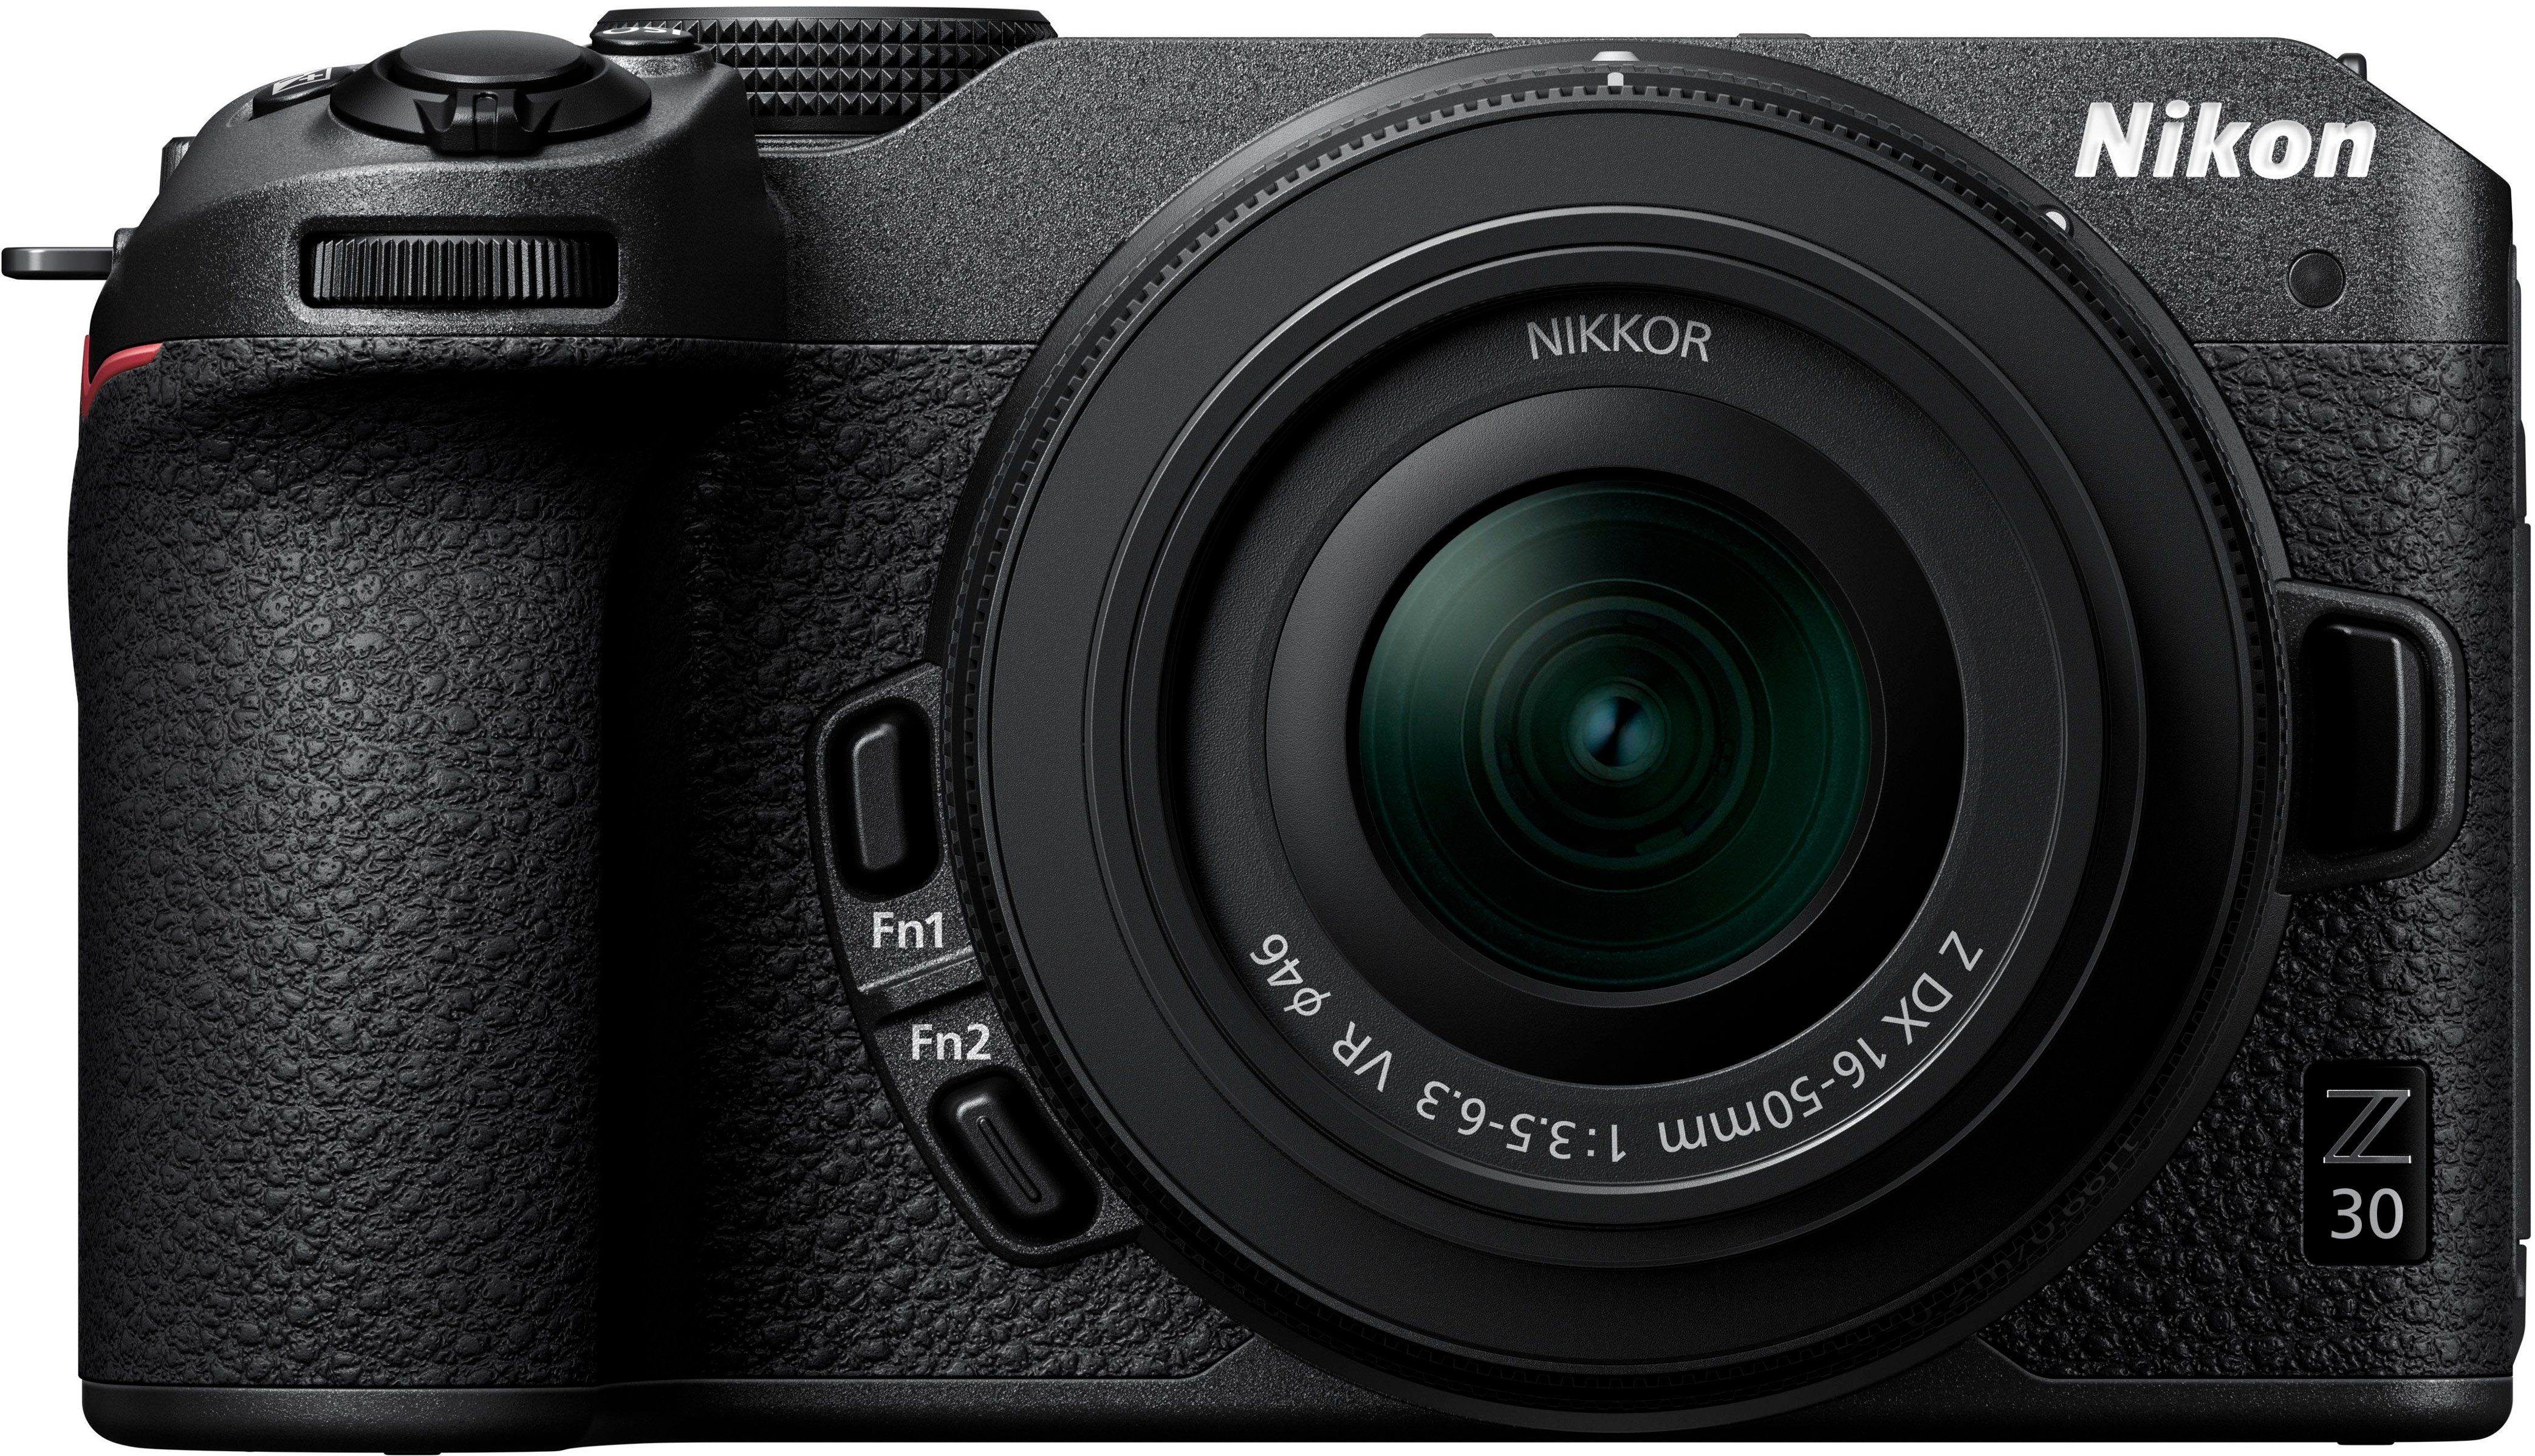 Nikon Z 30 4K Mirrorless Camera w/ NIKKOR Z DX 16-50mm f/3.5-6.3 VR Lens Black 1749 - Best Buy | Best Buy U.S.